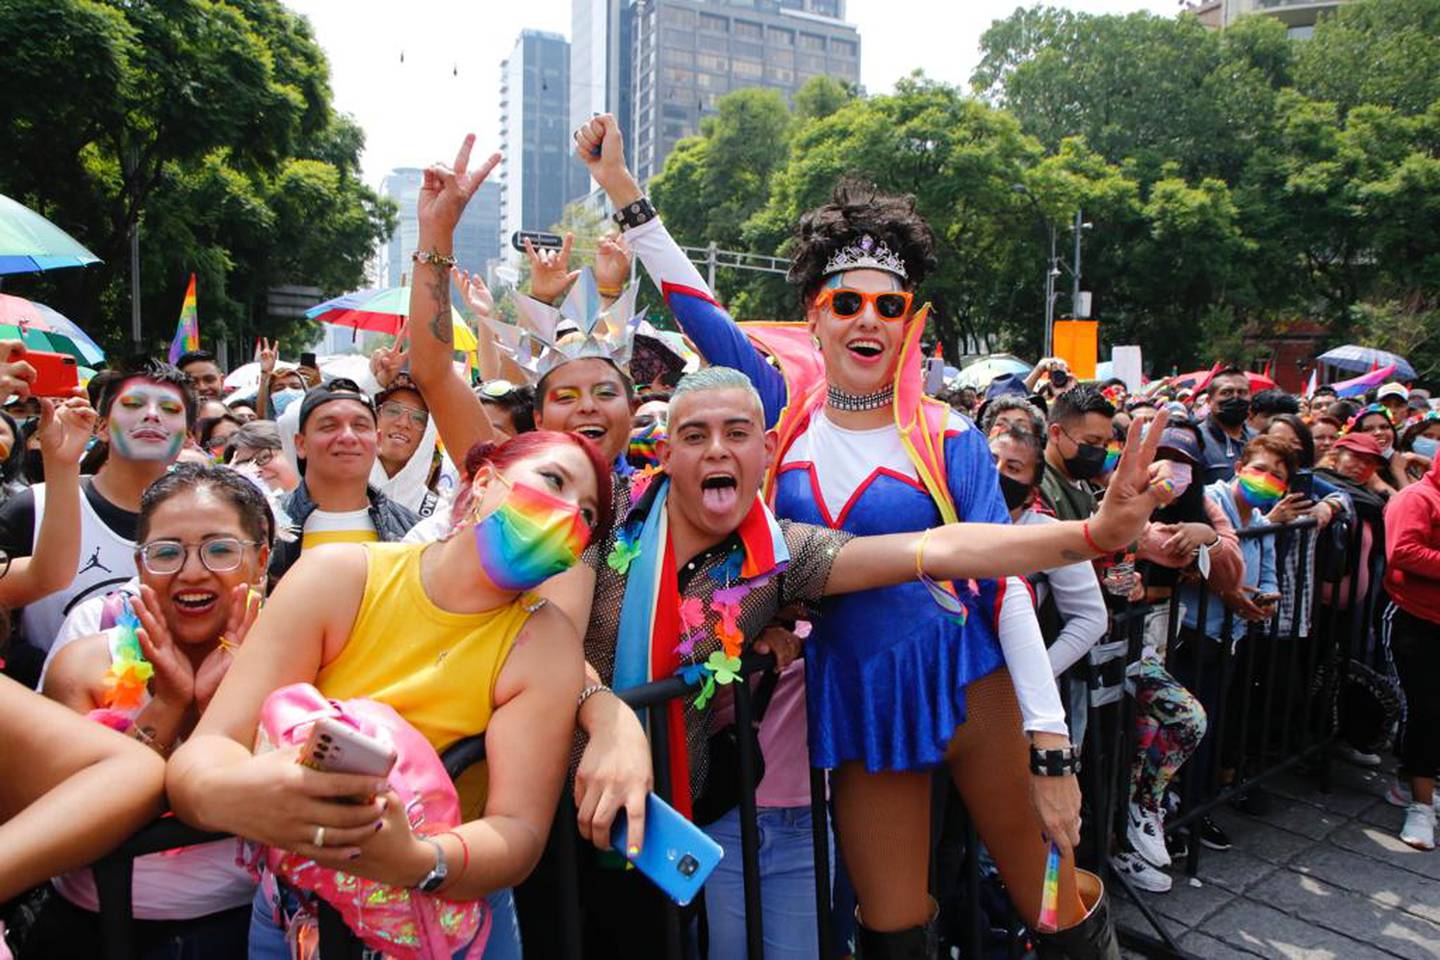 La población gay, lesbiana, bisexual o de otra orientación sexual LGB+ asciende a 4,6 millones, lo que representa 4,8% de las personas de 15 años y más. (Cortesía: Gobierno Ciudad de México)